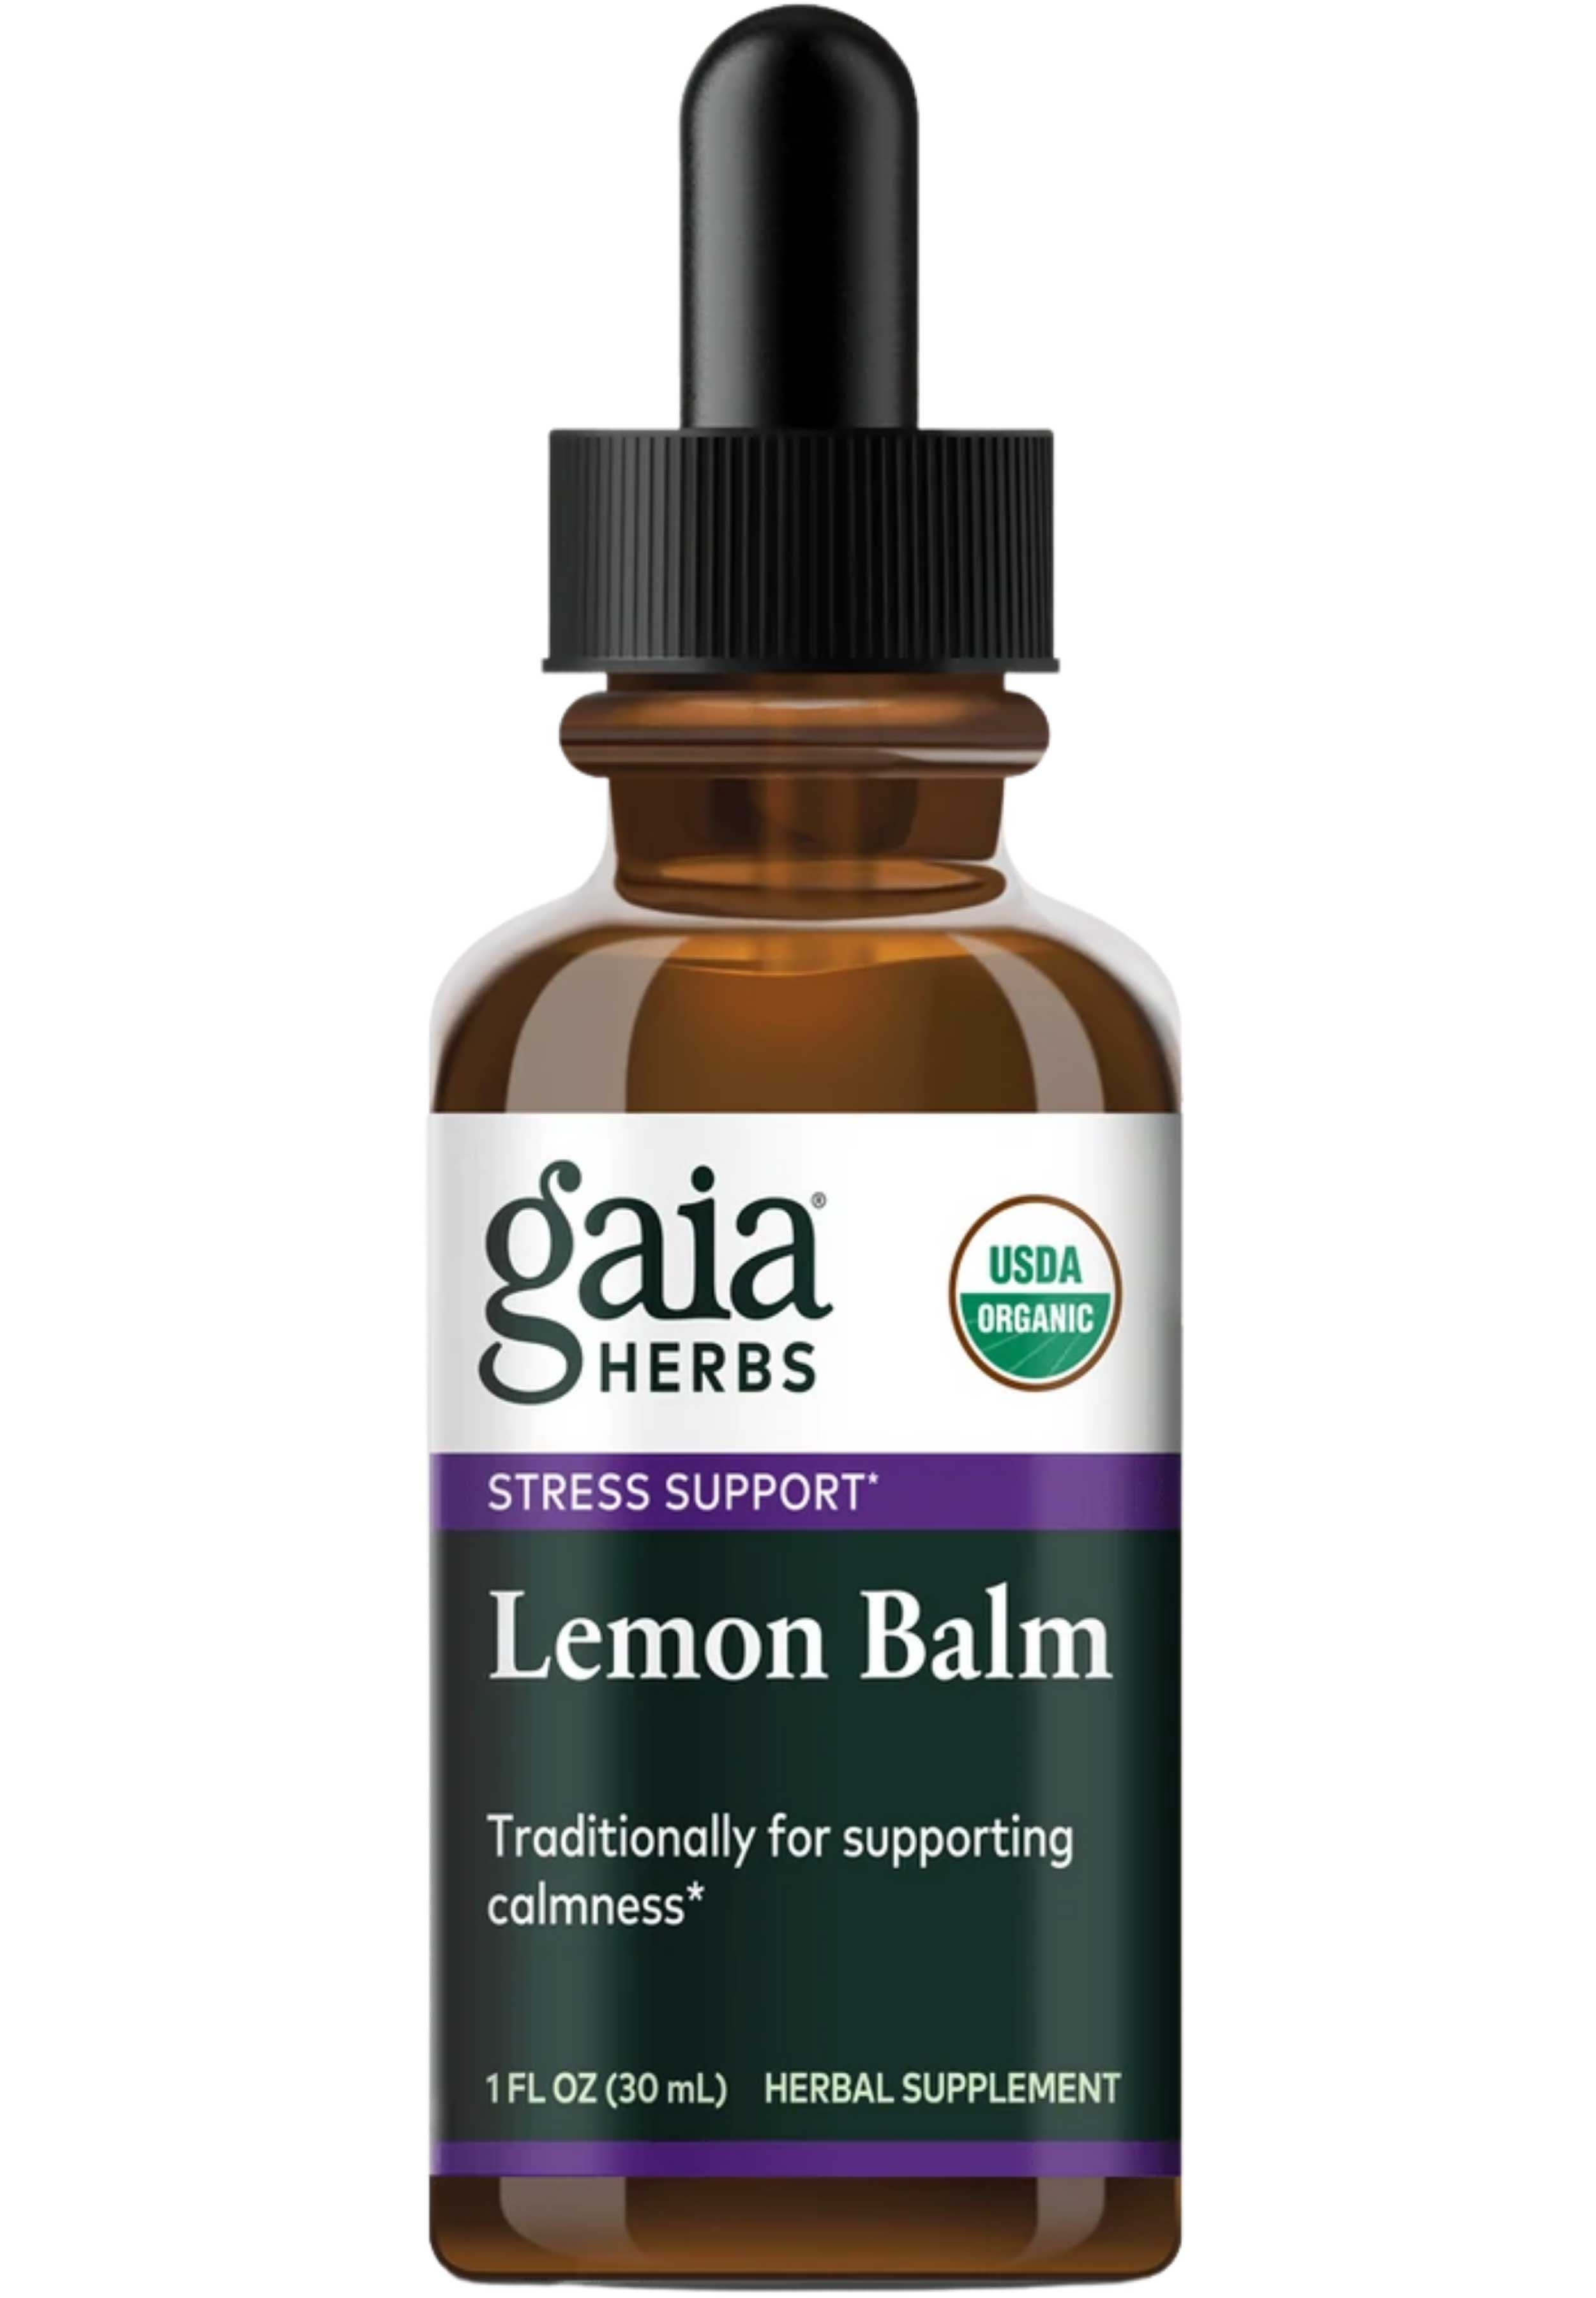 Gaia Herbs Lemon Balm